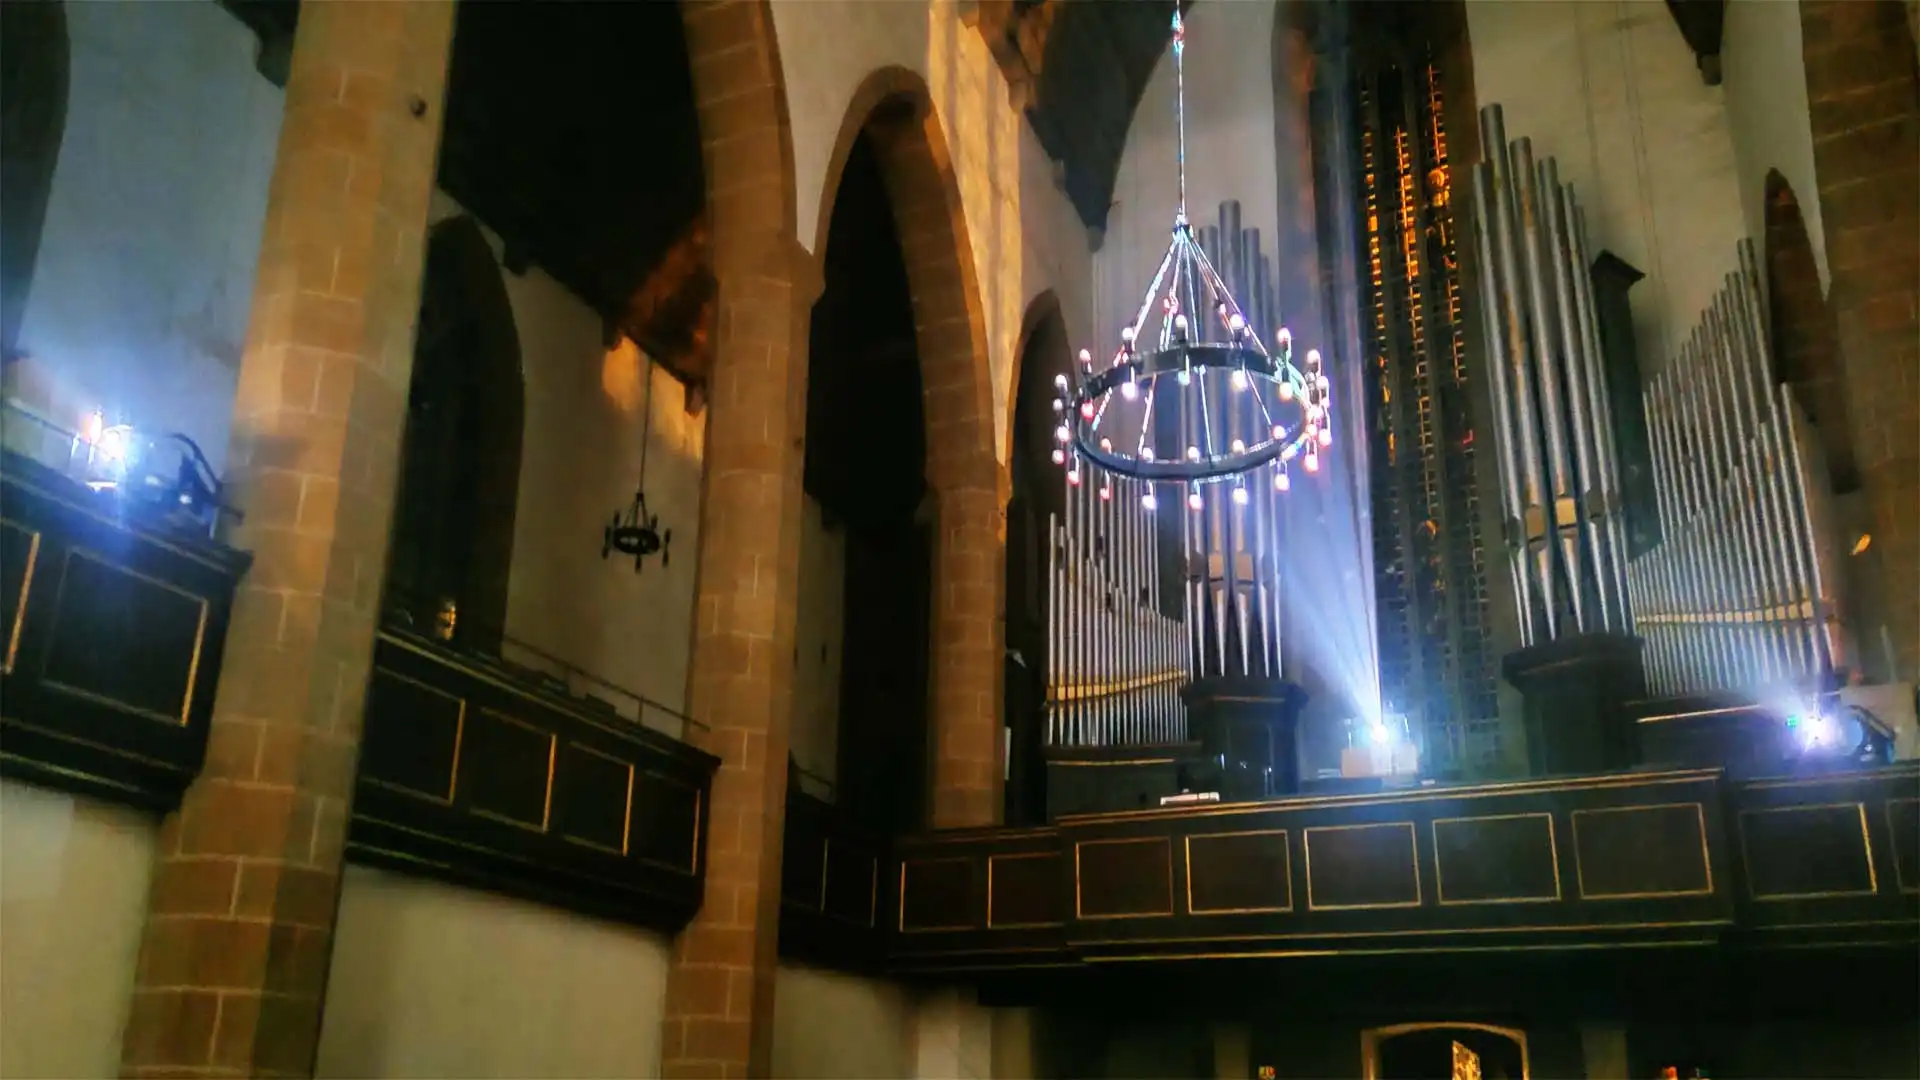 Drei Laserbeamer auf der Empore der Augustinerkirche Erfurt, aufgebaut für die Medieninstallation Silence